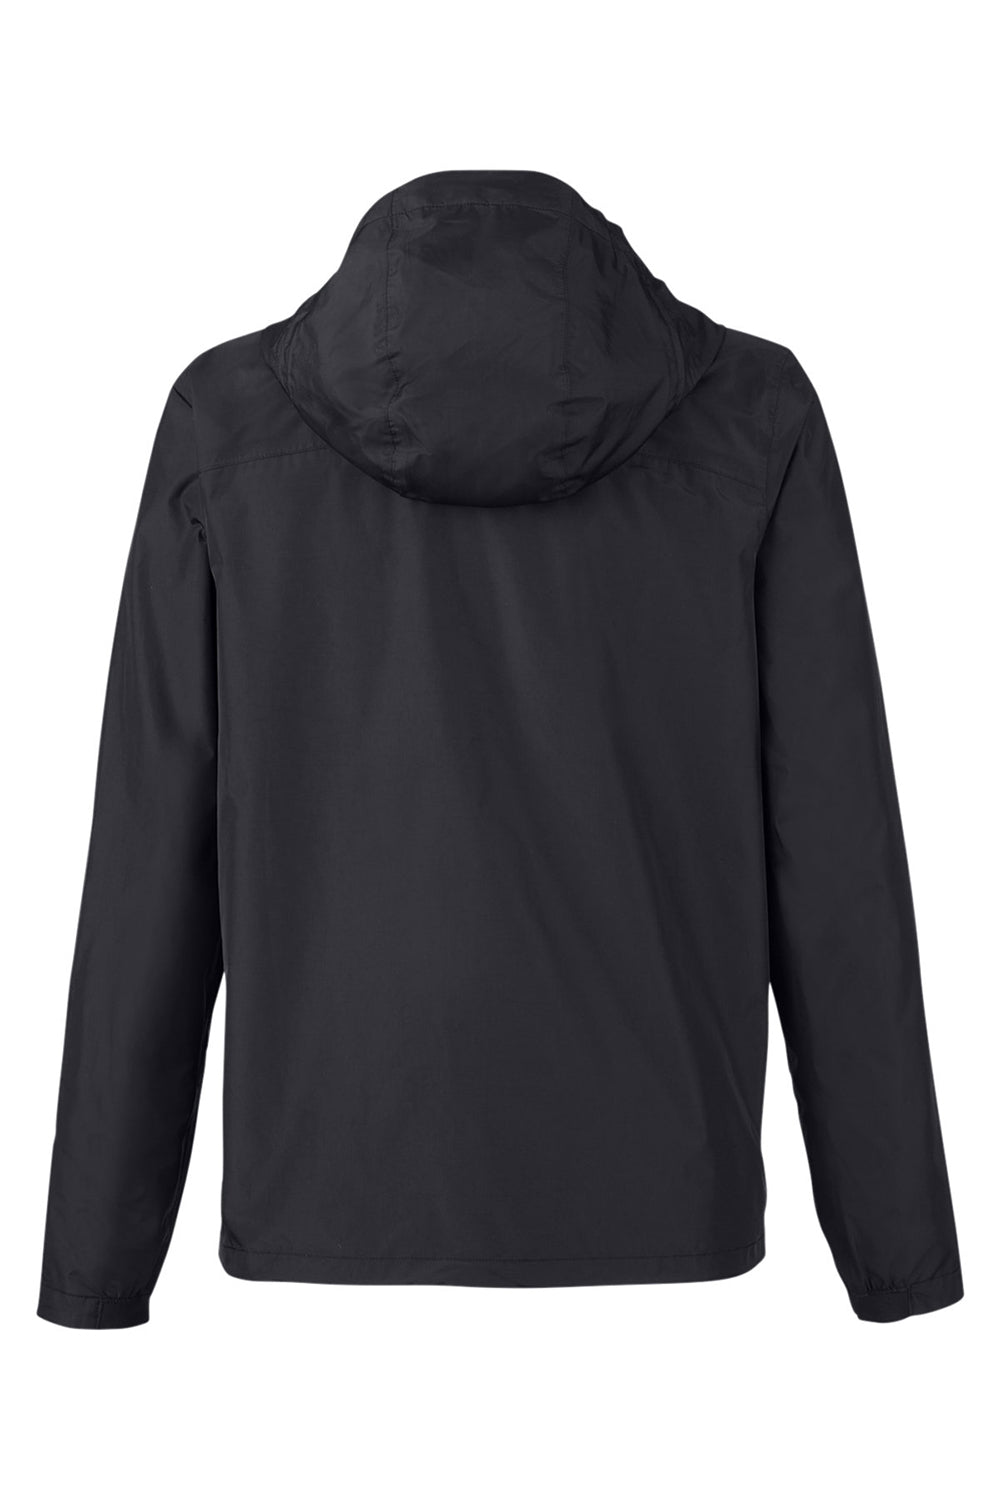 Under Armour 1374645 Womens Cloudstrike 2.0 Waterproof Full Zip Hooded Jacket Black Flat Back